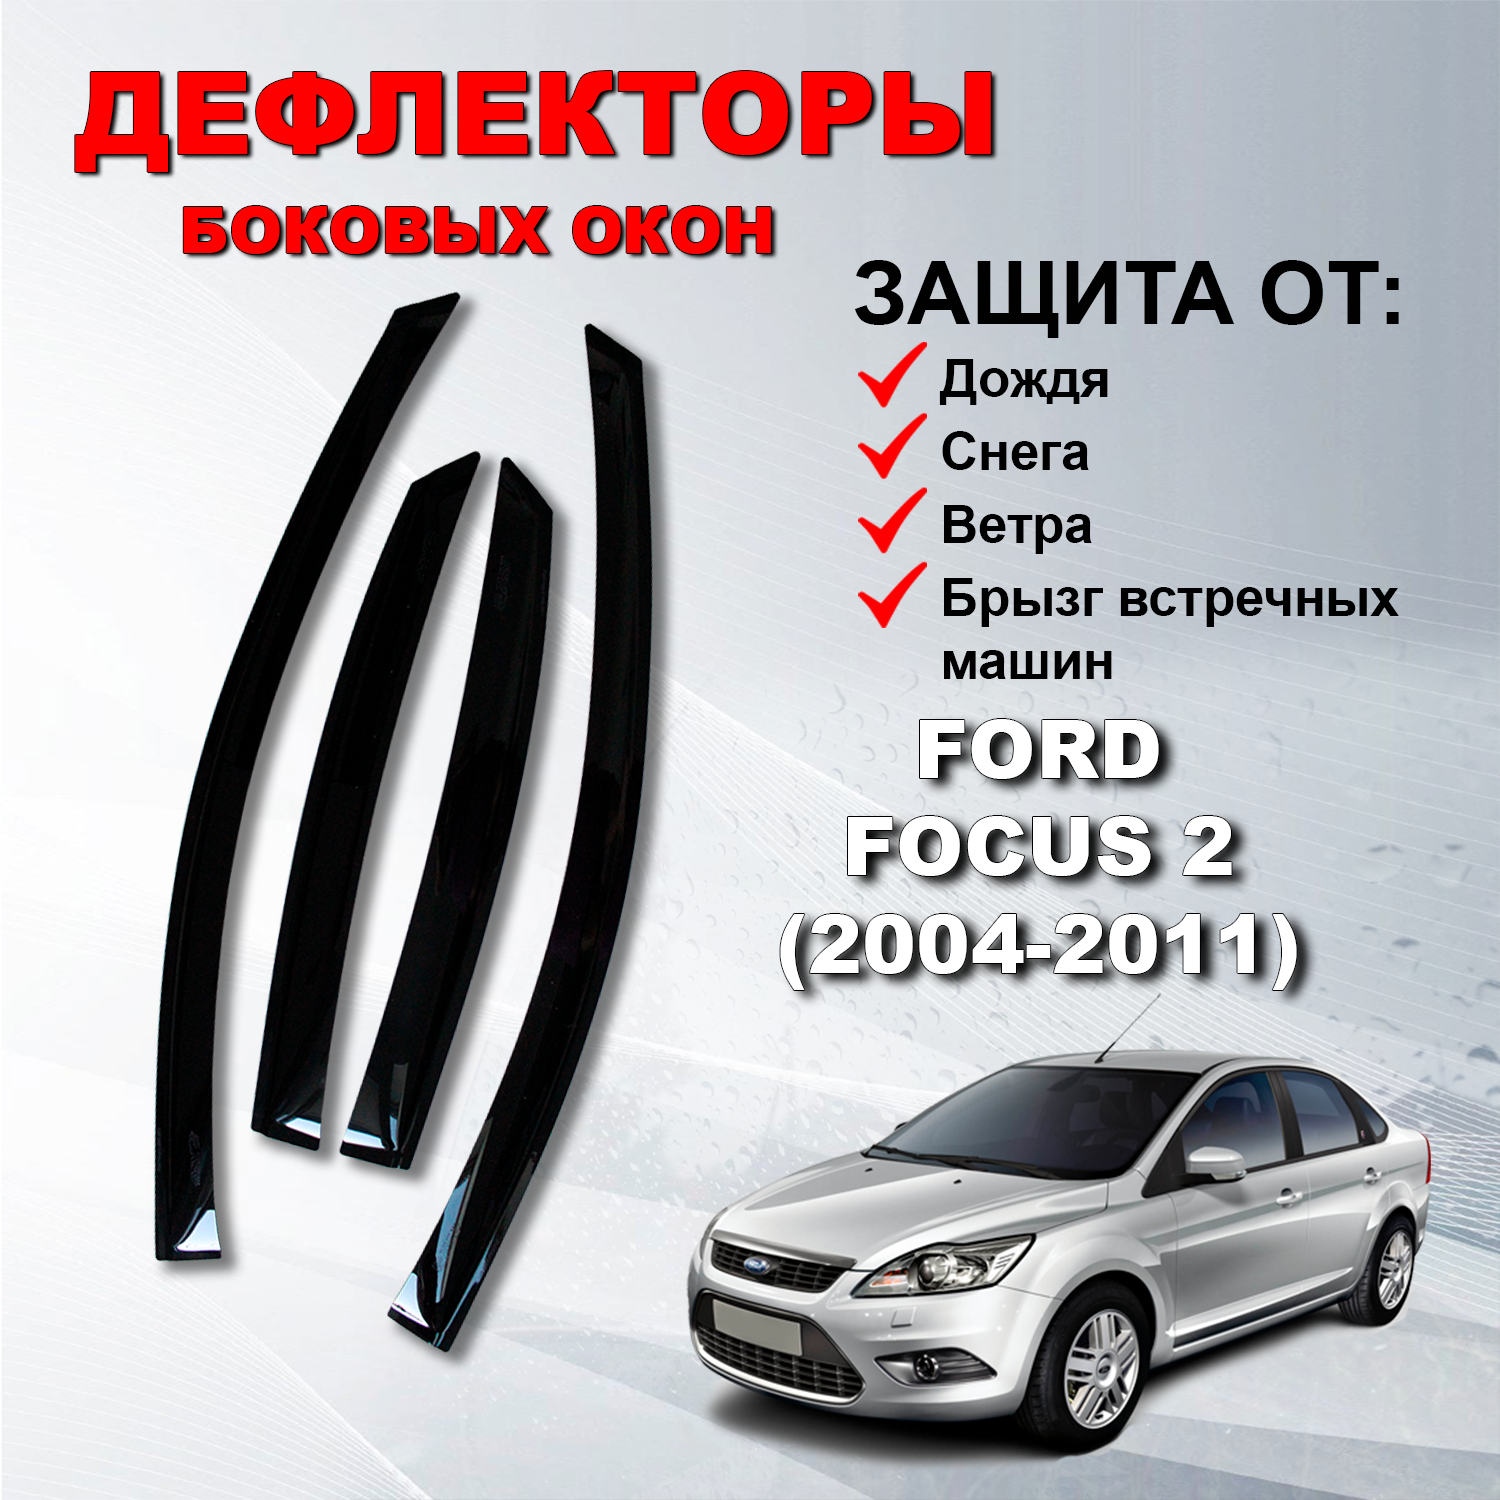 Дефлекторы боковых окон (Ветровики) на Форд Фокус 2 седан, хэтчбек / Ford Focus 2 (2004-2011)